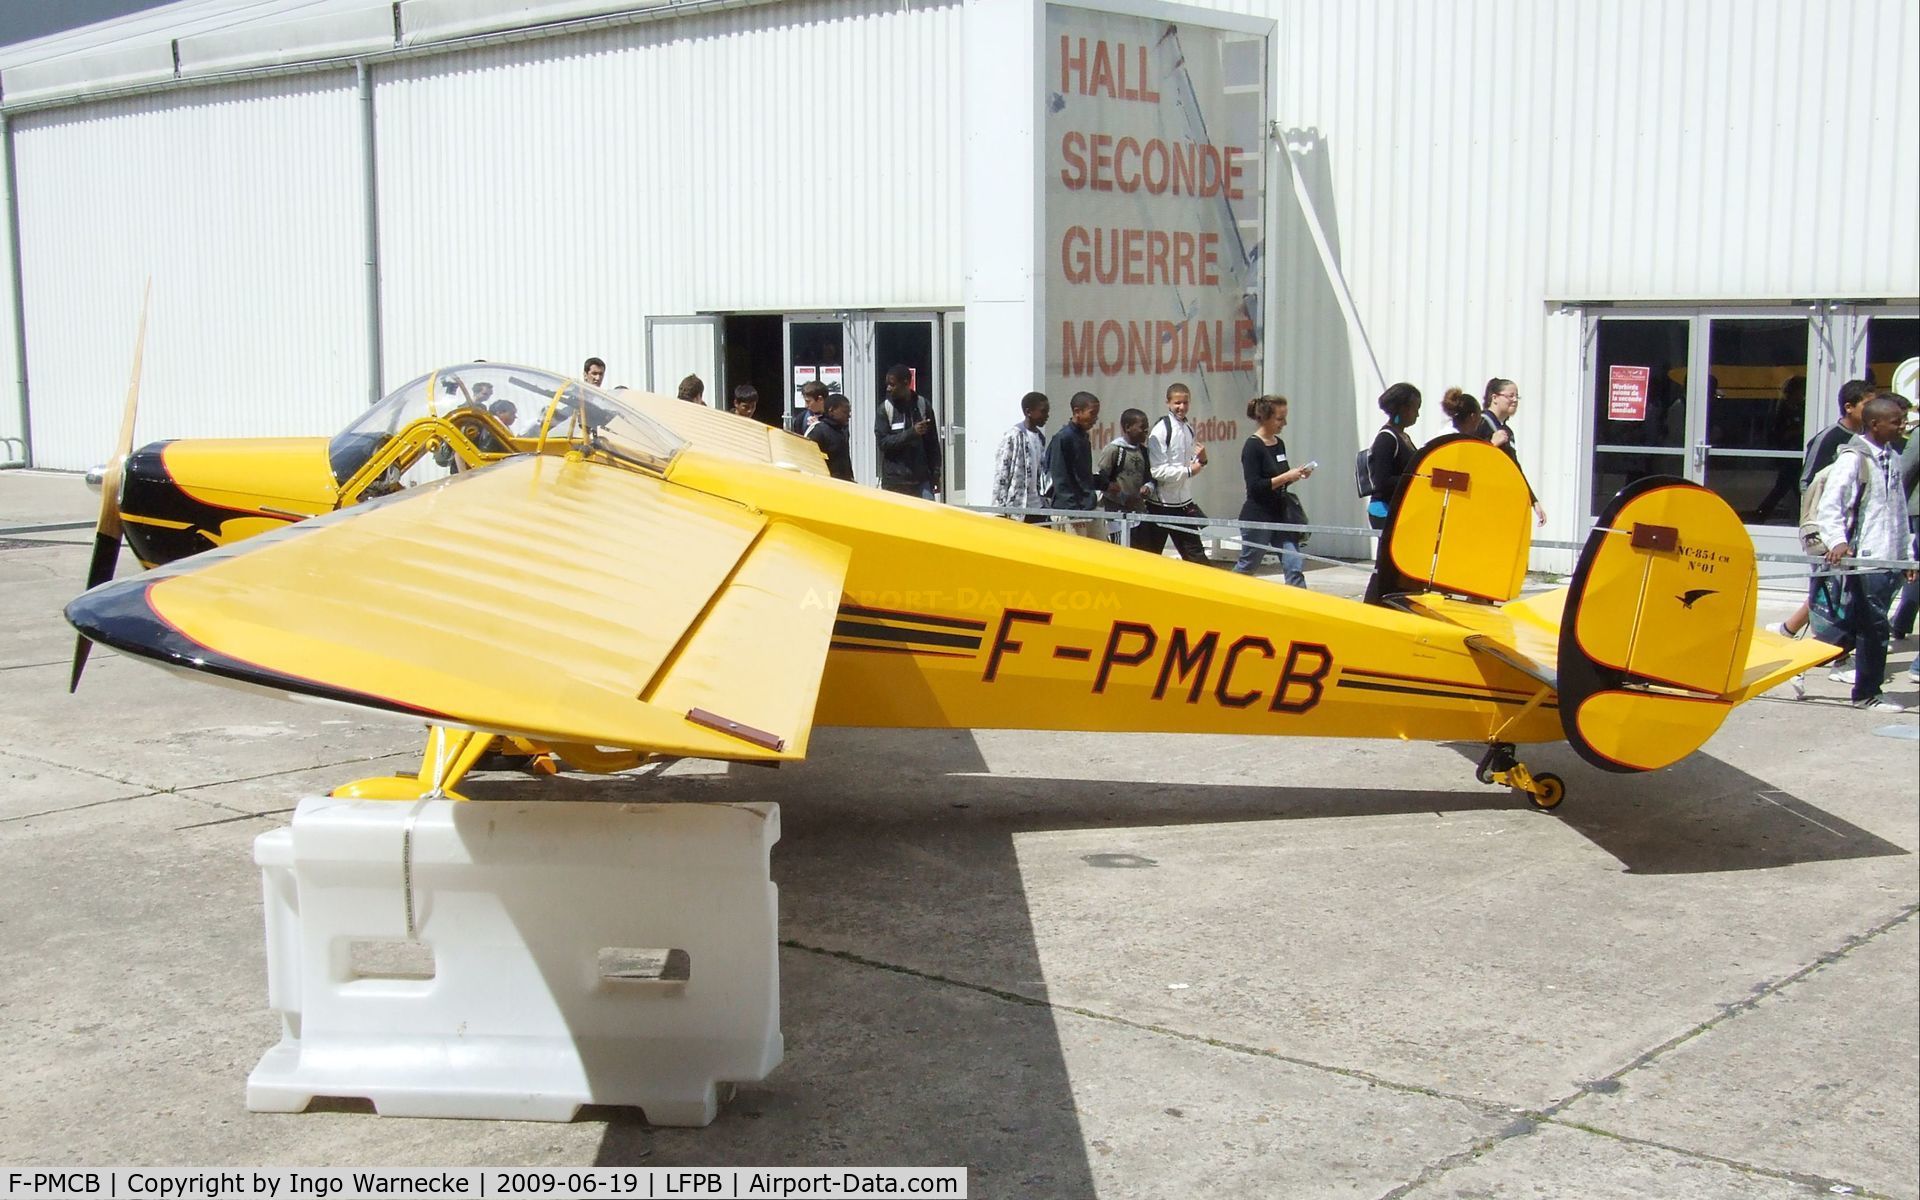 F-PMCB, Nord NC-854CM Norvigie C/N 01, SNCAC NC.854 at the Musée de l'Air during Aerosalon 2009, Paris